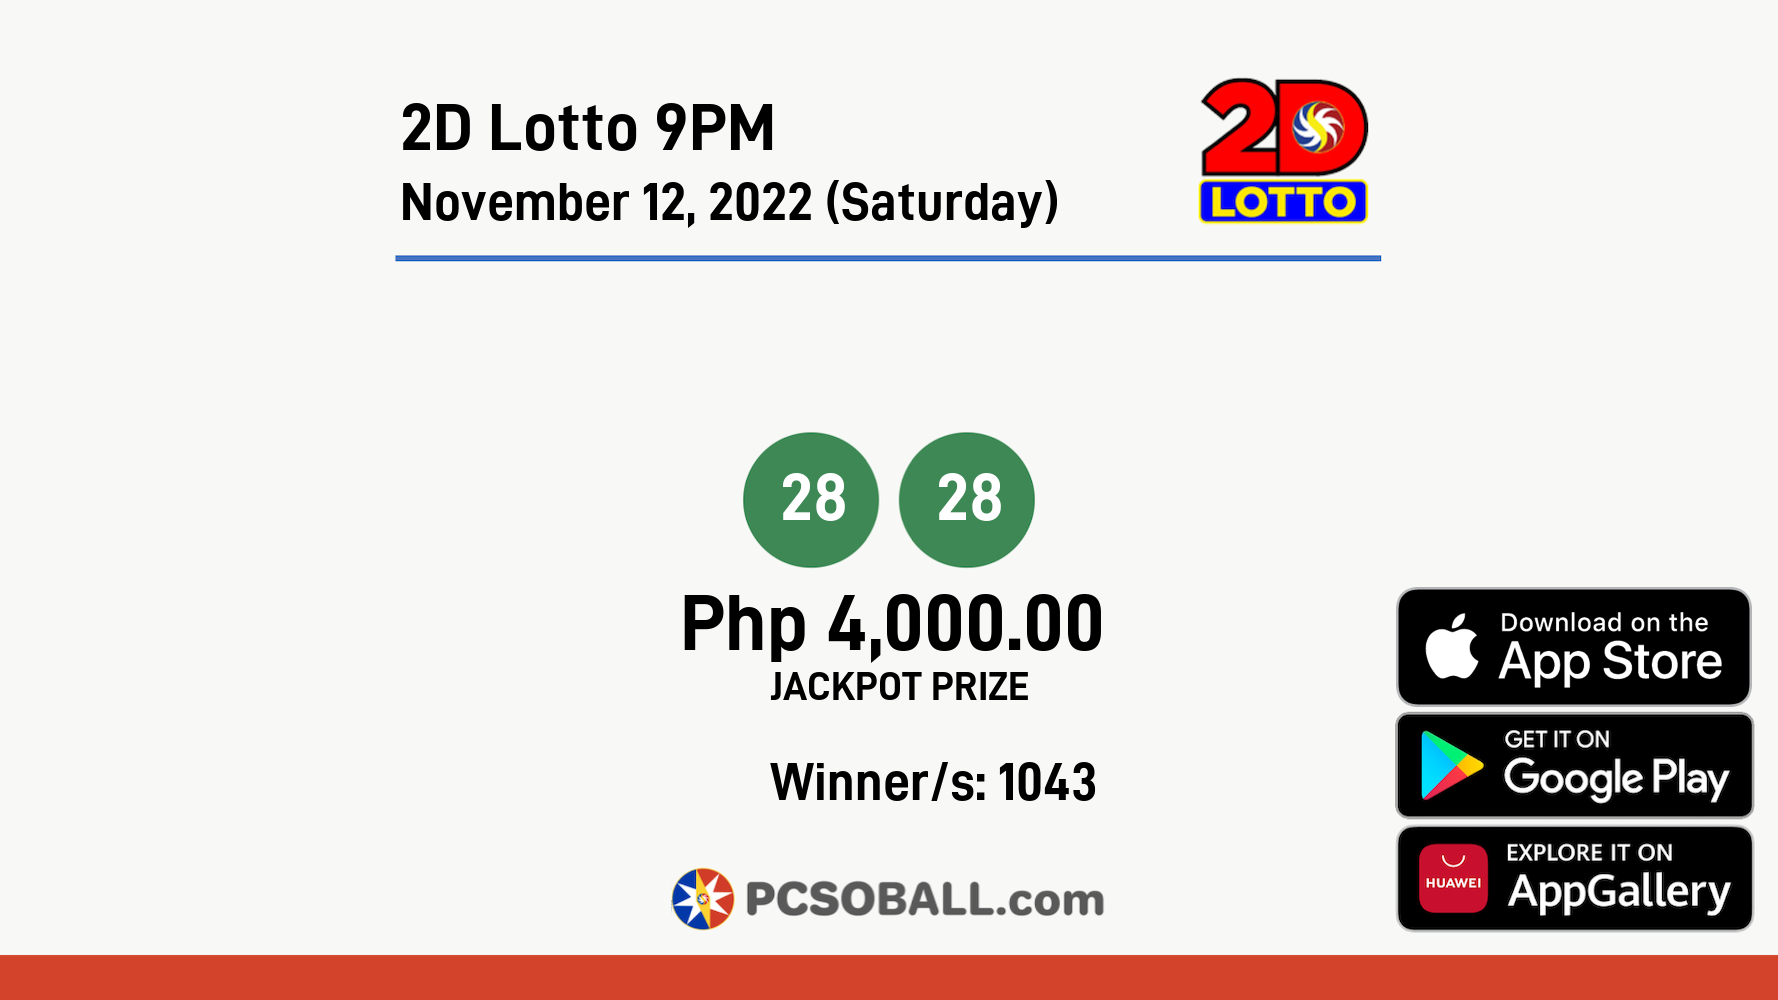 2D Lotto 9PM November 12, 2022 (Saturday) Result